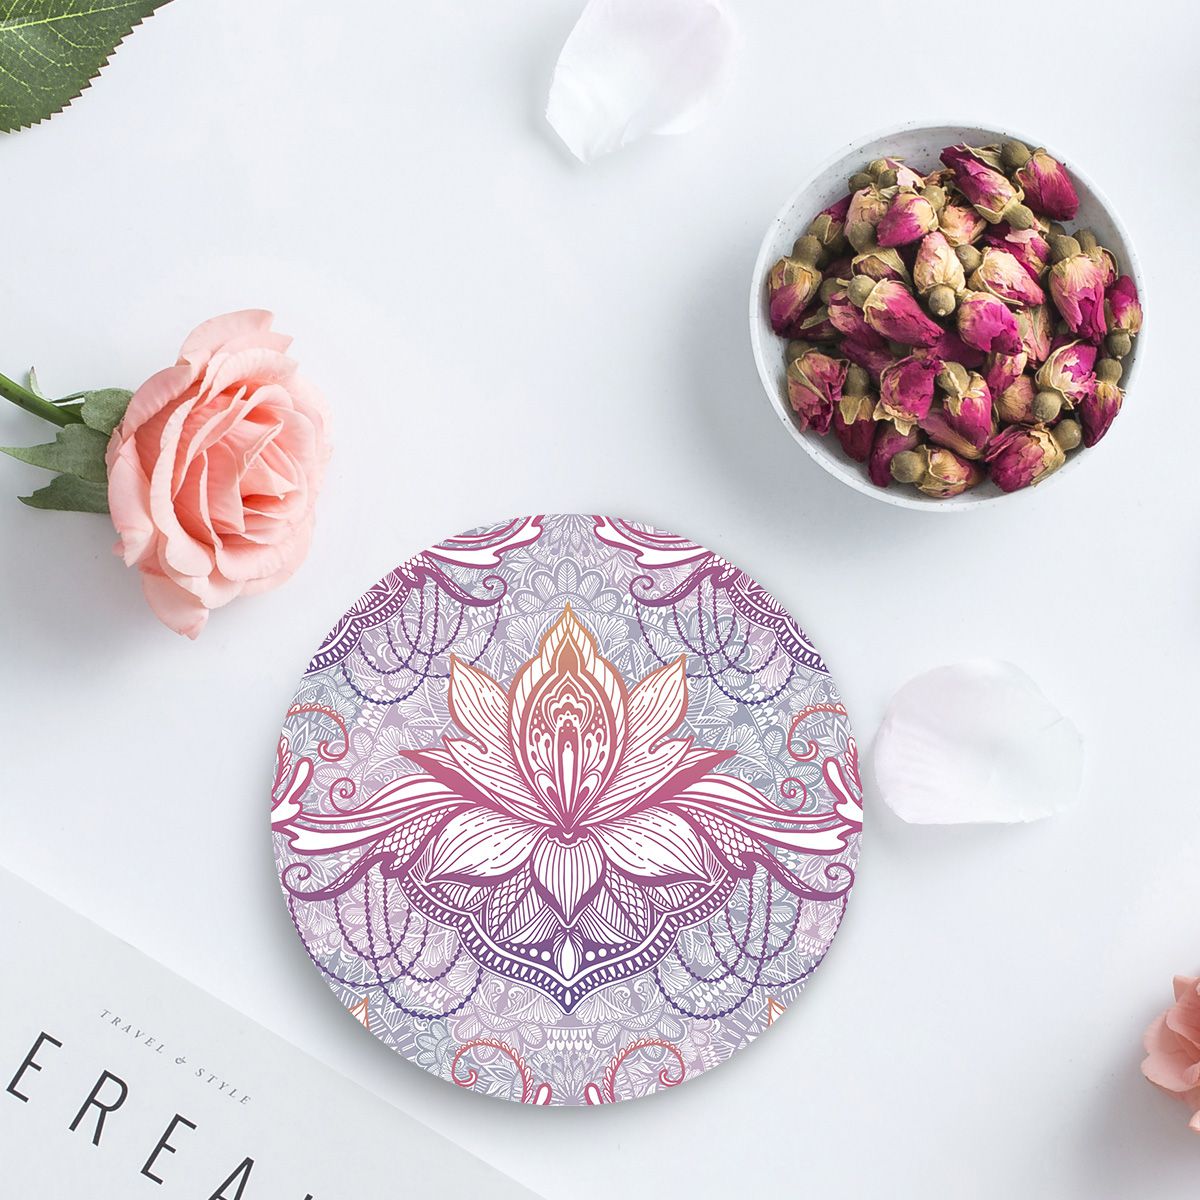 Ethnische böhmische Lotusblume Mandala Keramik-Untersetzer eingestellt